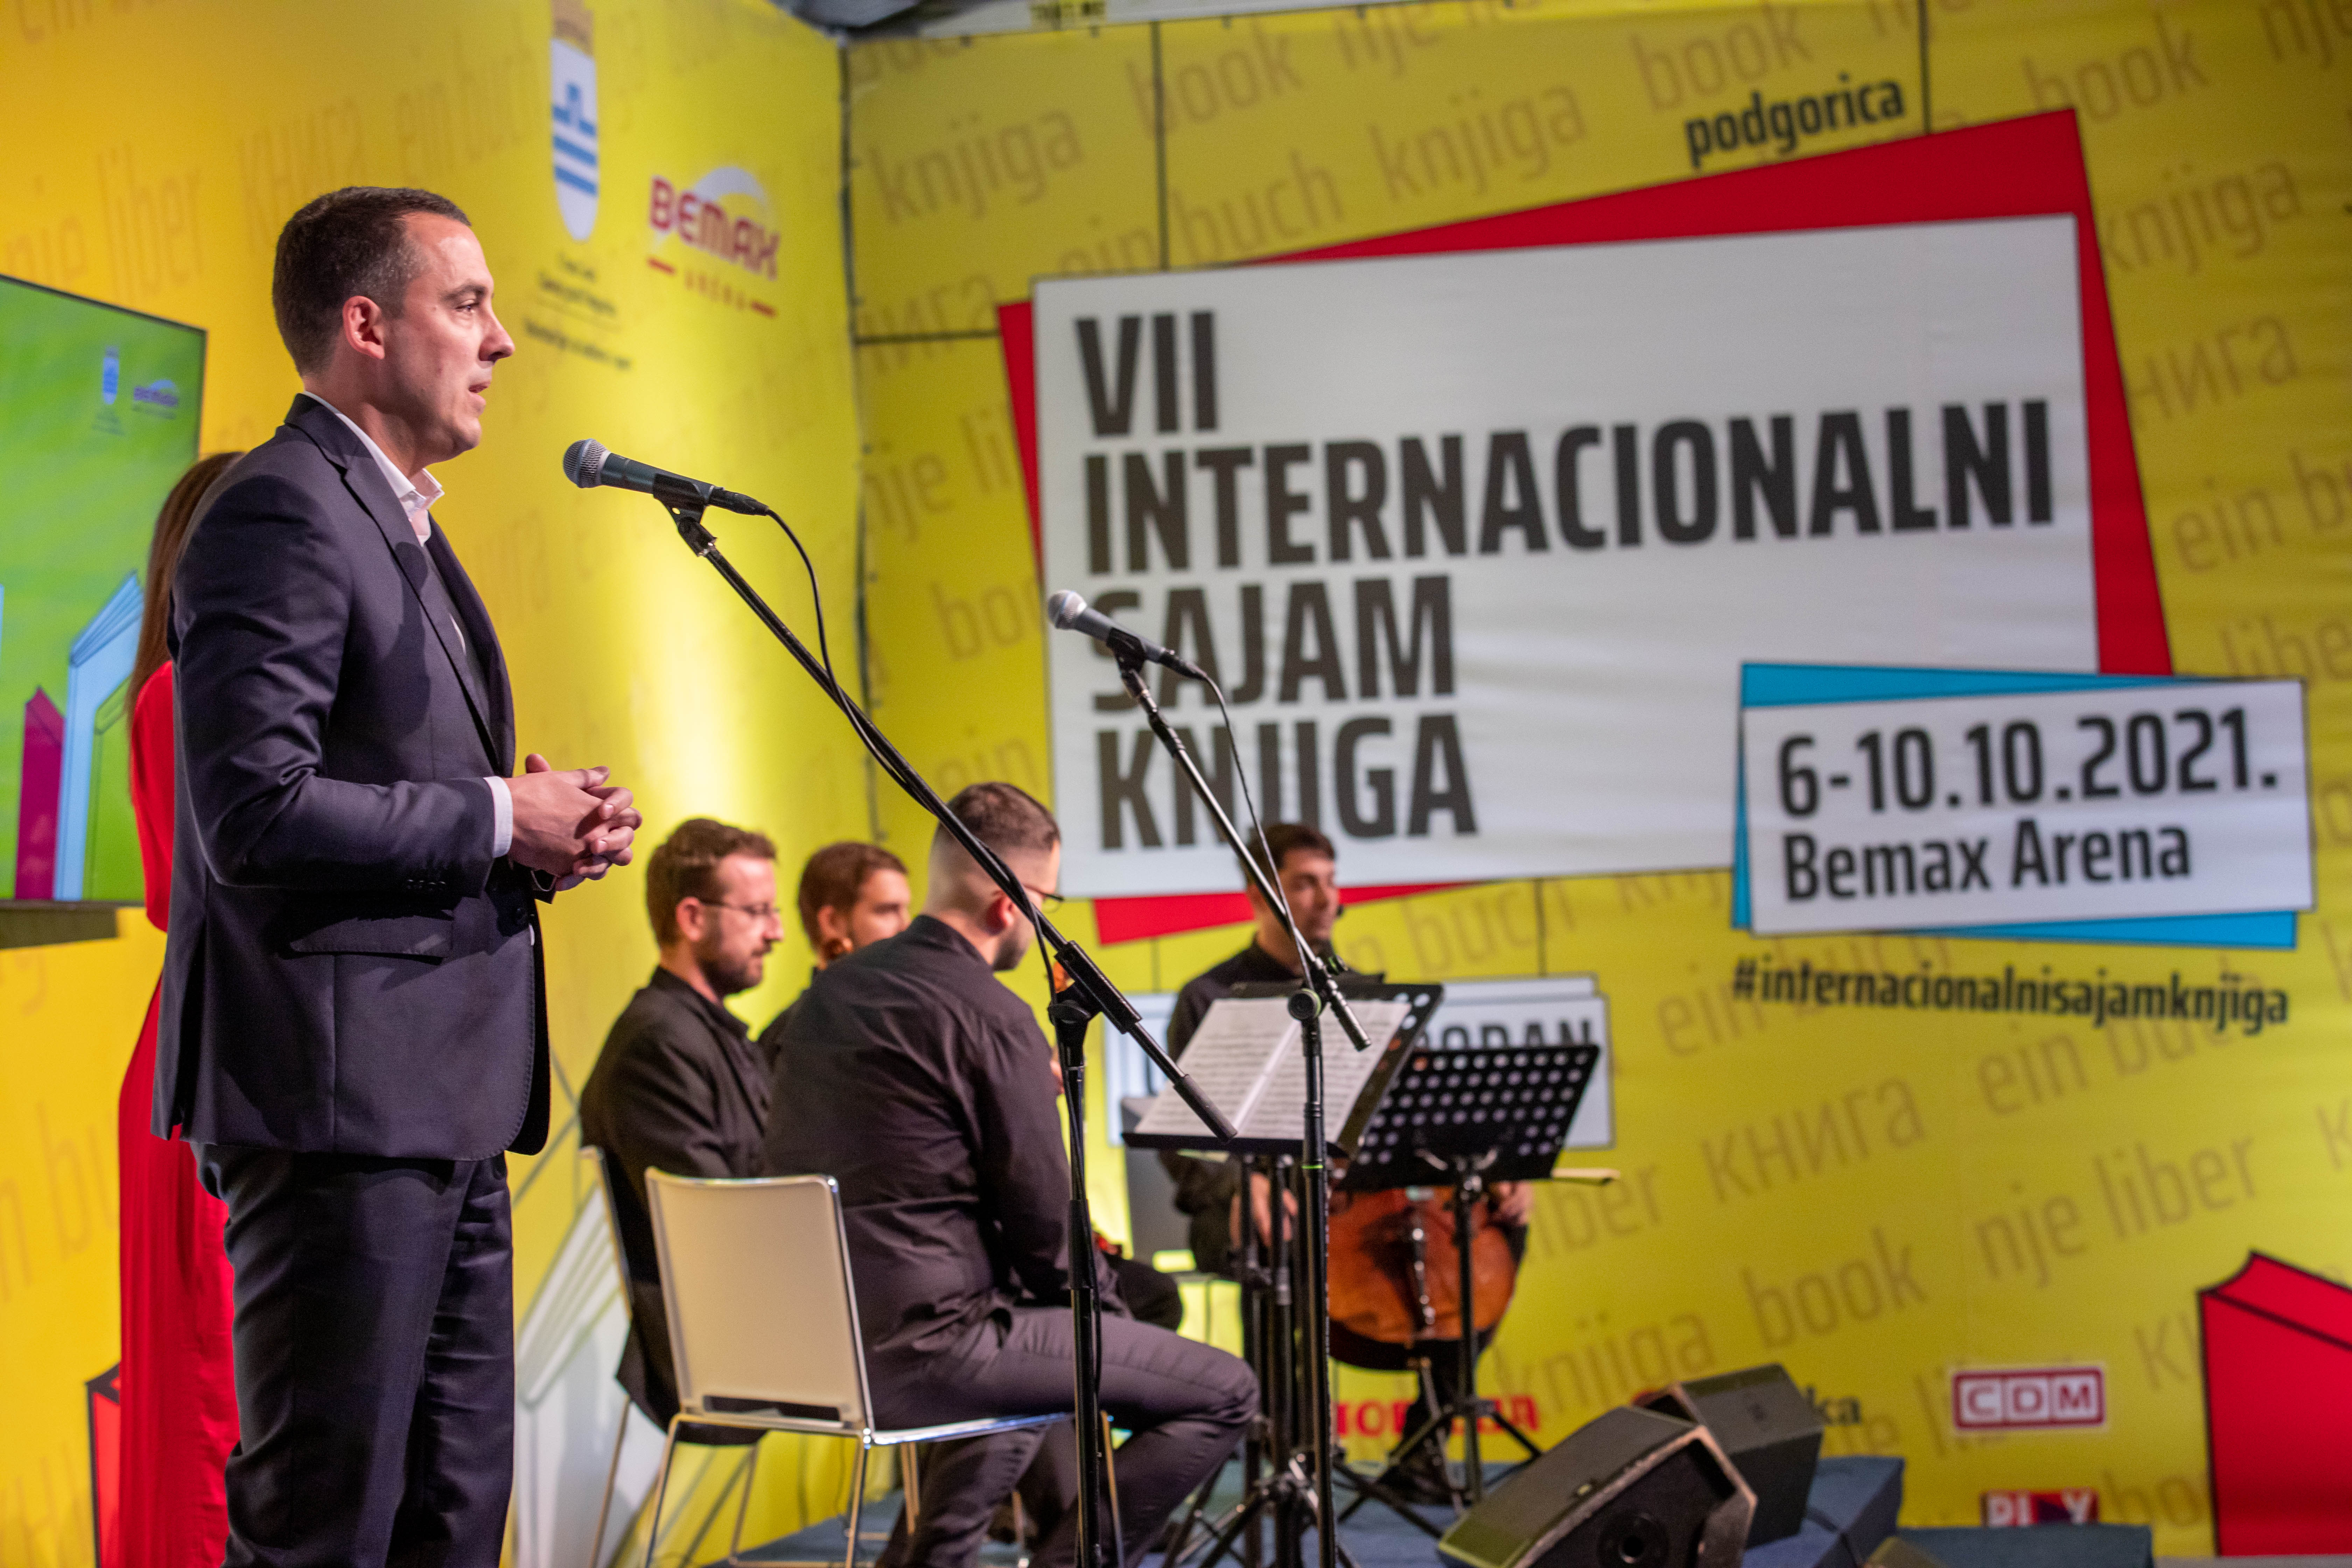 Otvoren VII internacionalni sajam knjiga u Podgorici; Vuković: Od toga koliko budemo čitali zavisi kakvo ćemo društvo biti